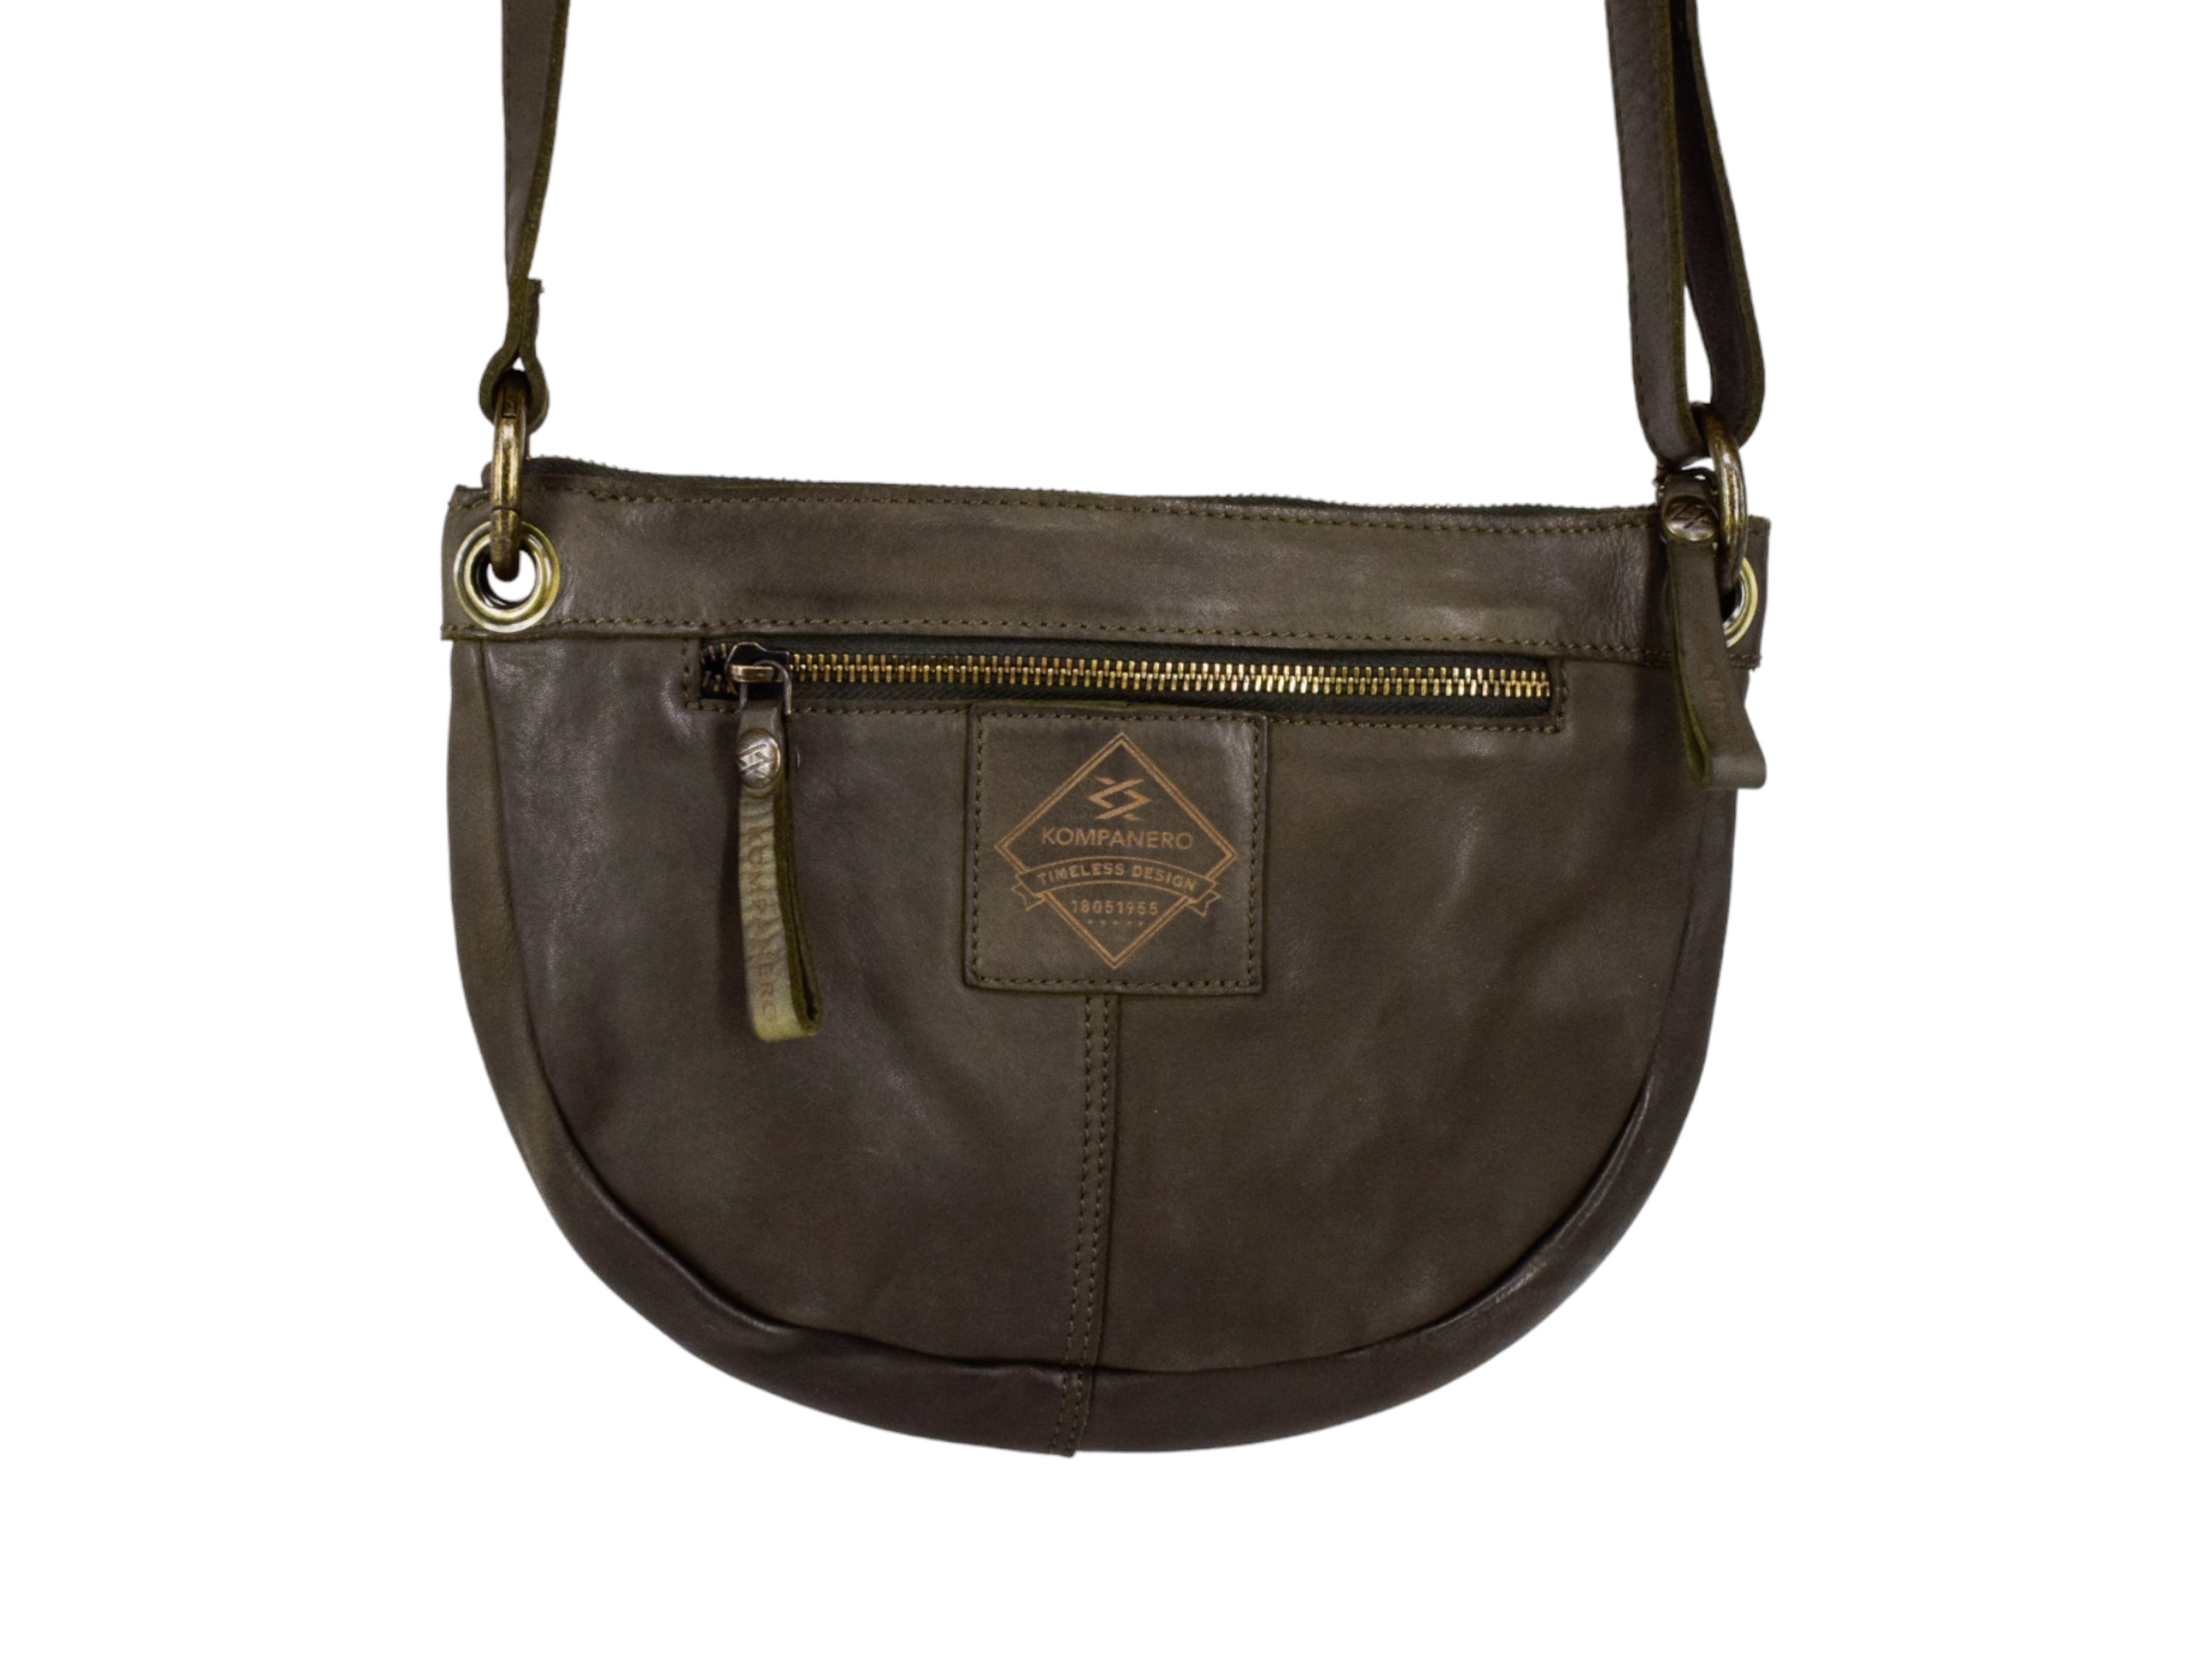 Kompanero Easton Cross Body Handbag - Women's